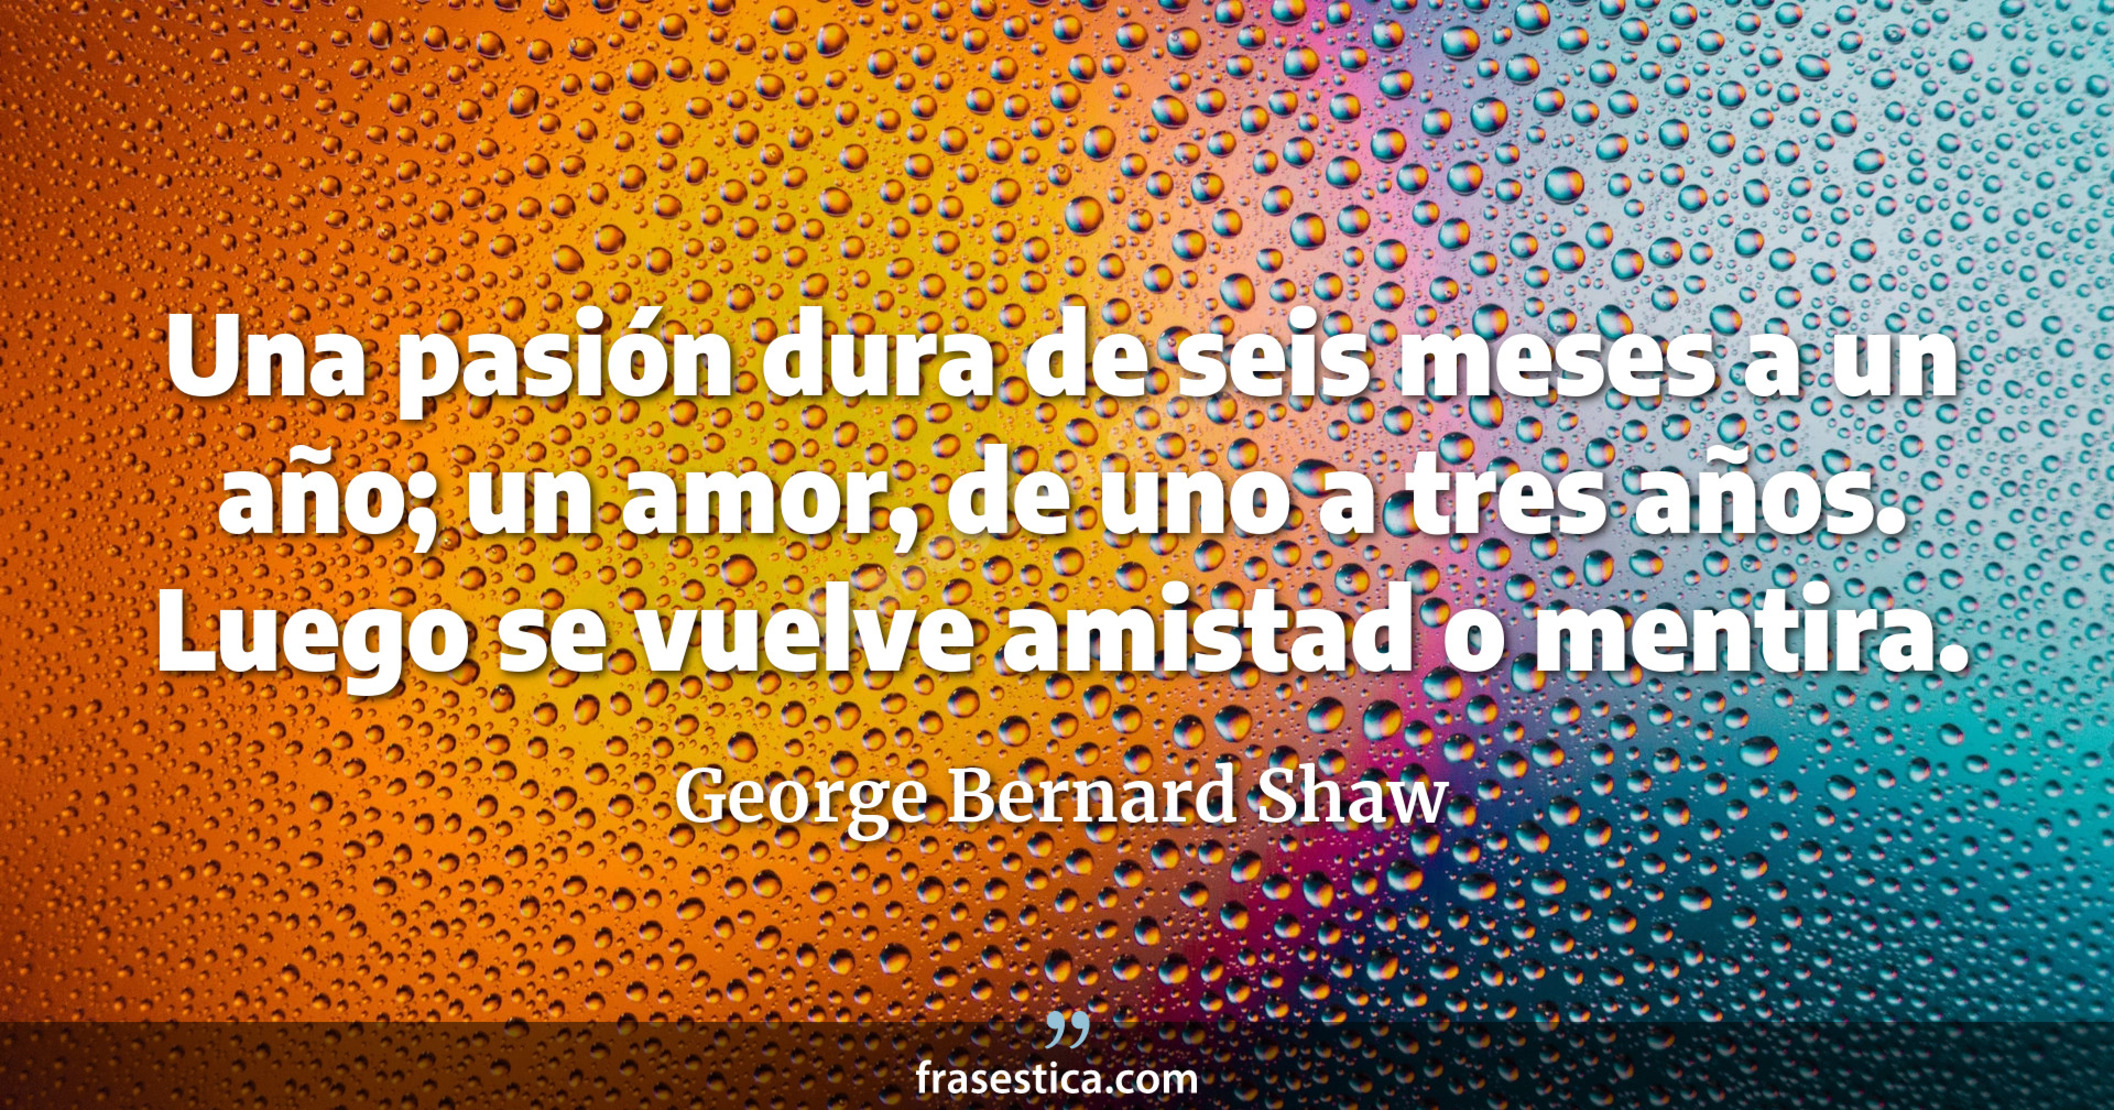 Una pasión dura de seis meses a un año; un amor, de uno a tres años. Luego se vuelve amistad o mentira. - George Bernard Shaw